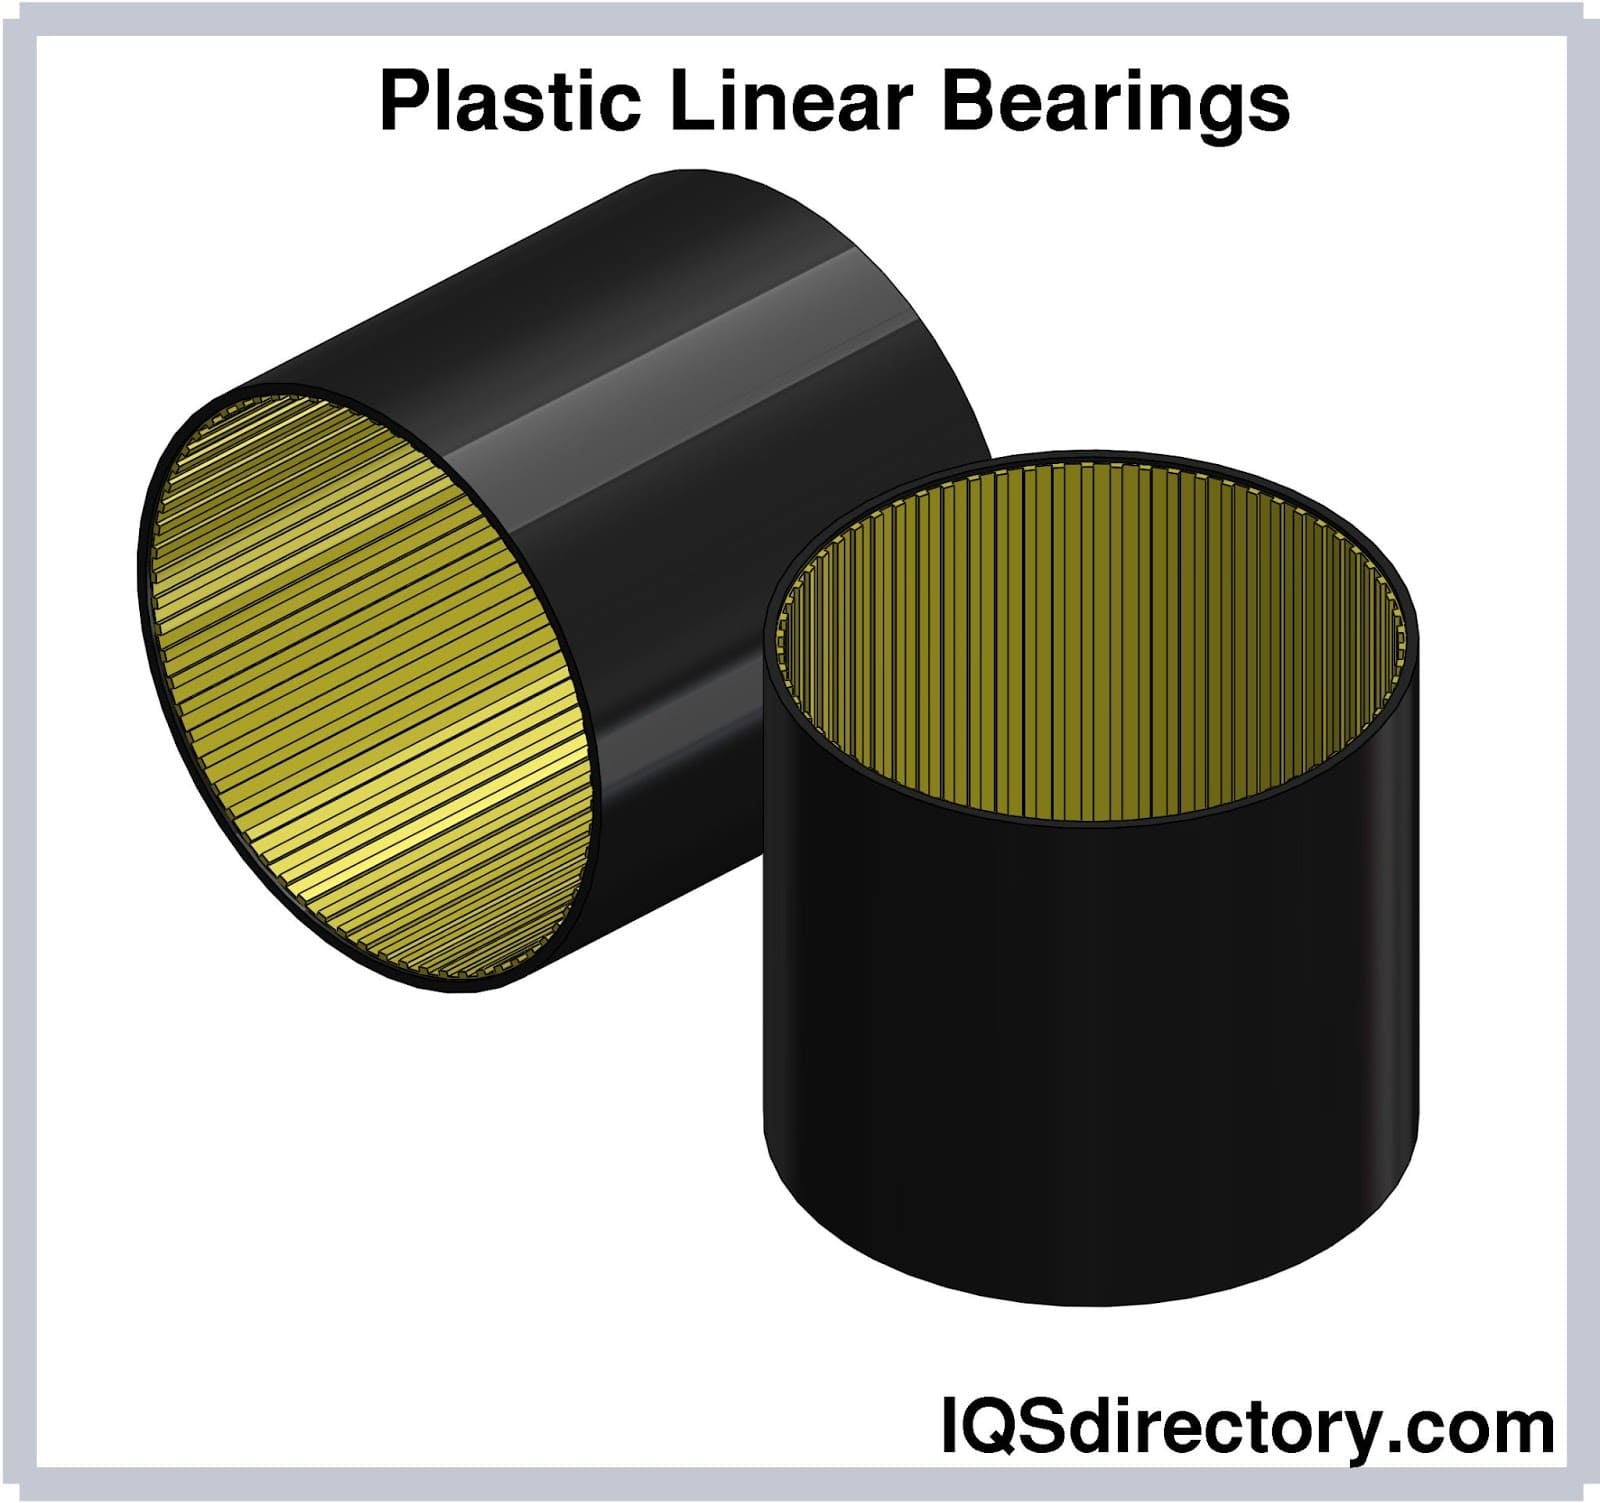 Plastic Linear Bearings